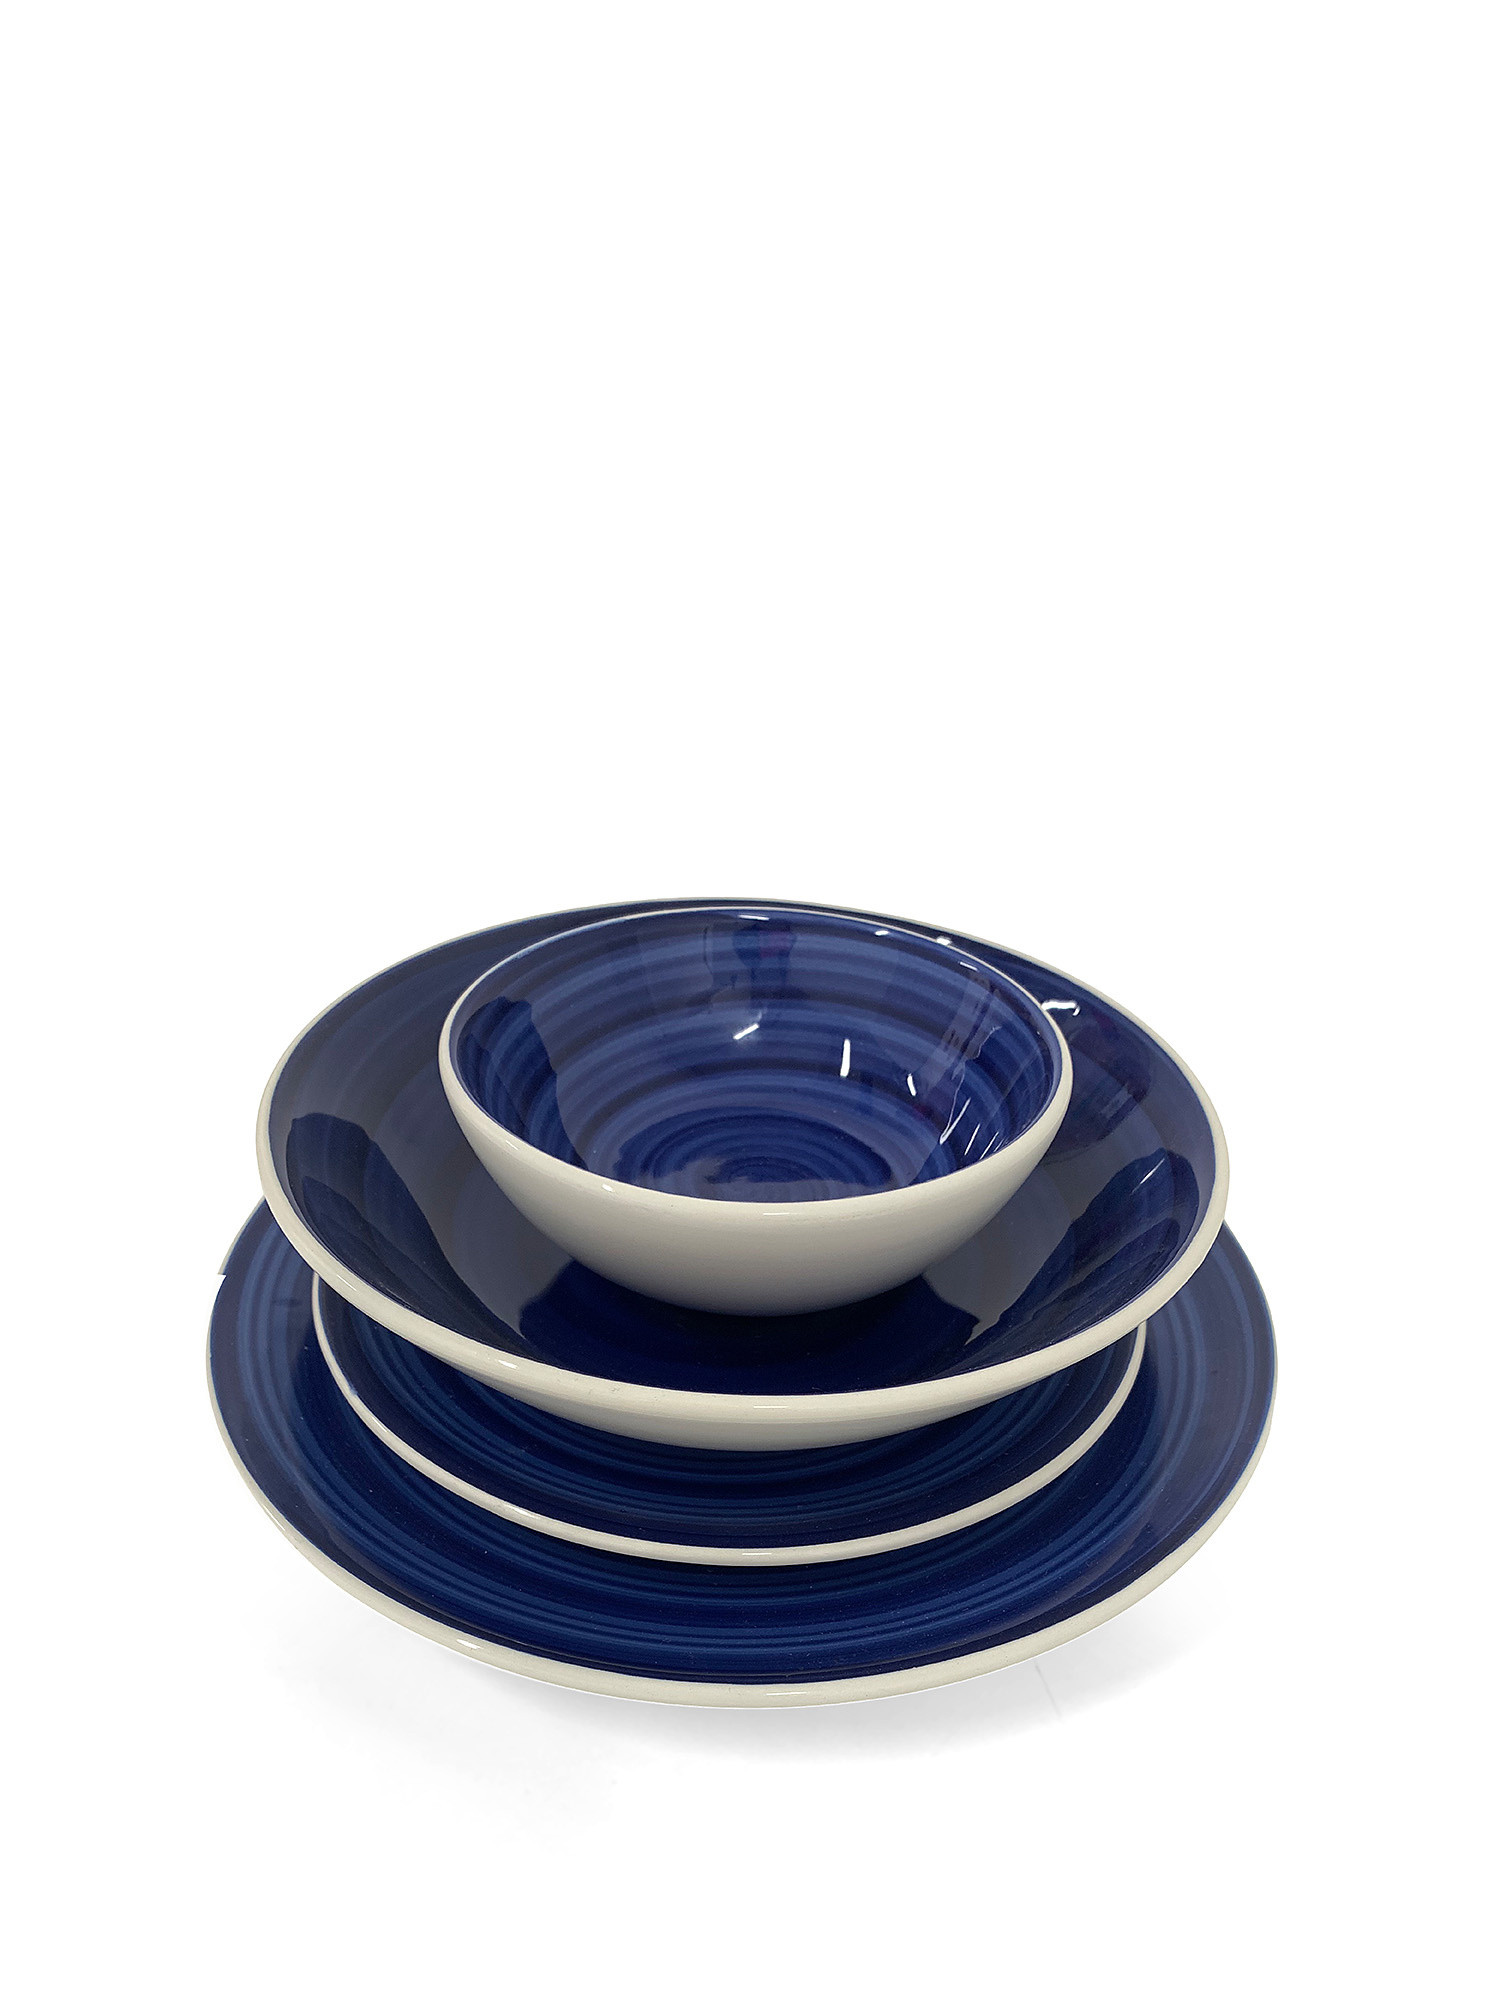 Coppetta ceramica dipinta a mano Spirale, Blu, large image number 1